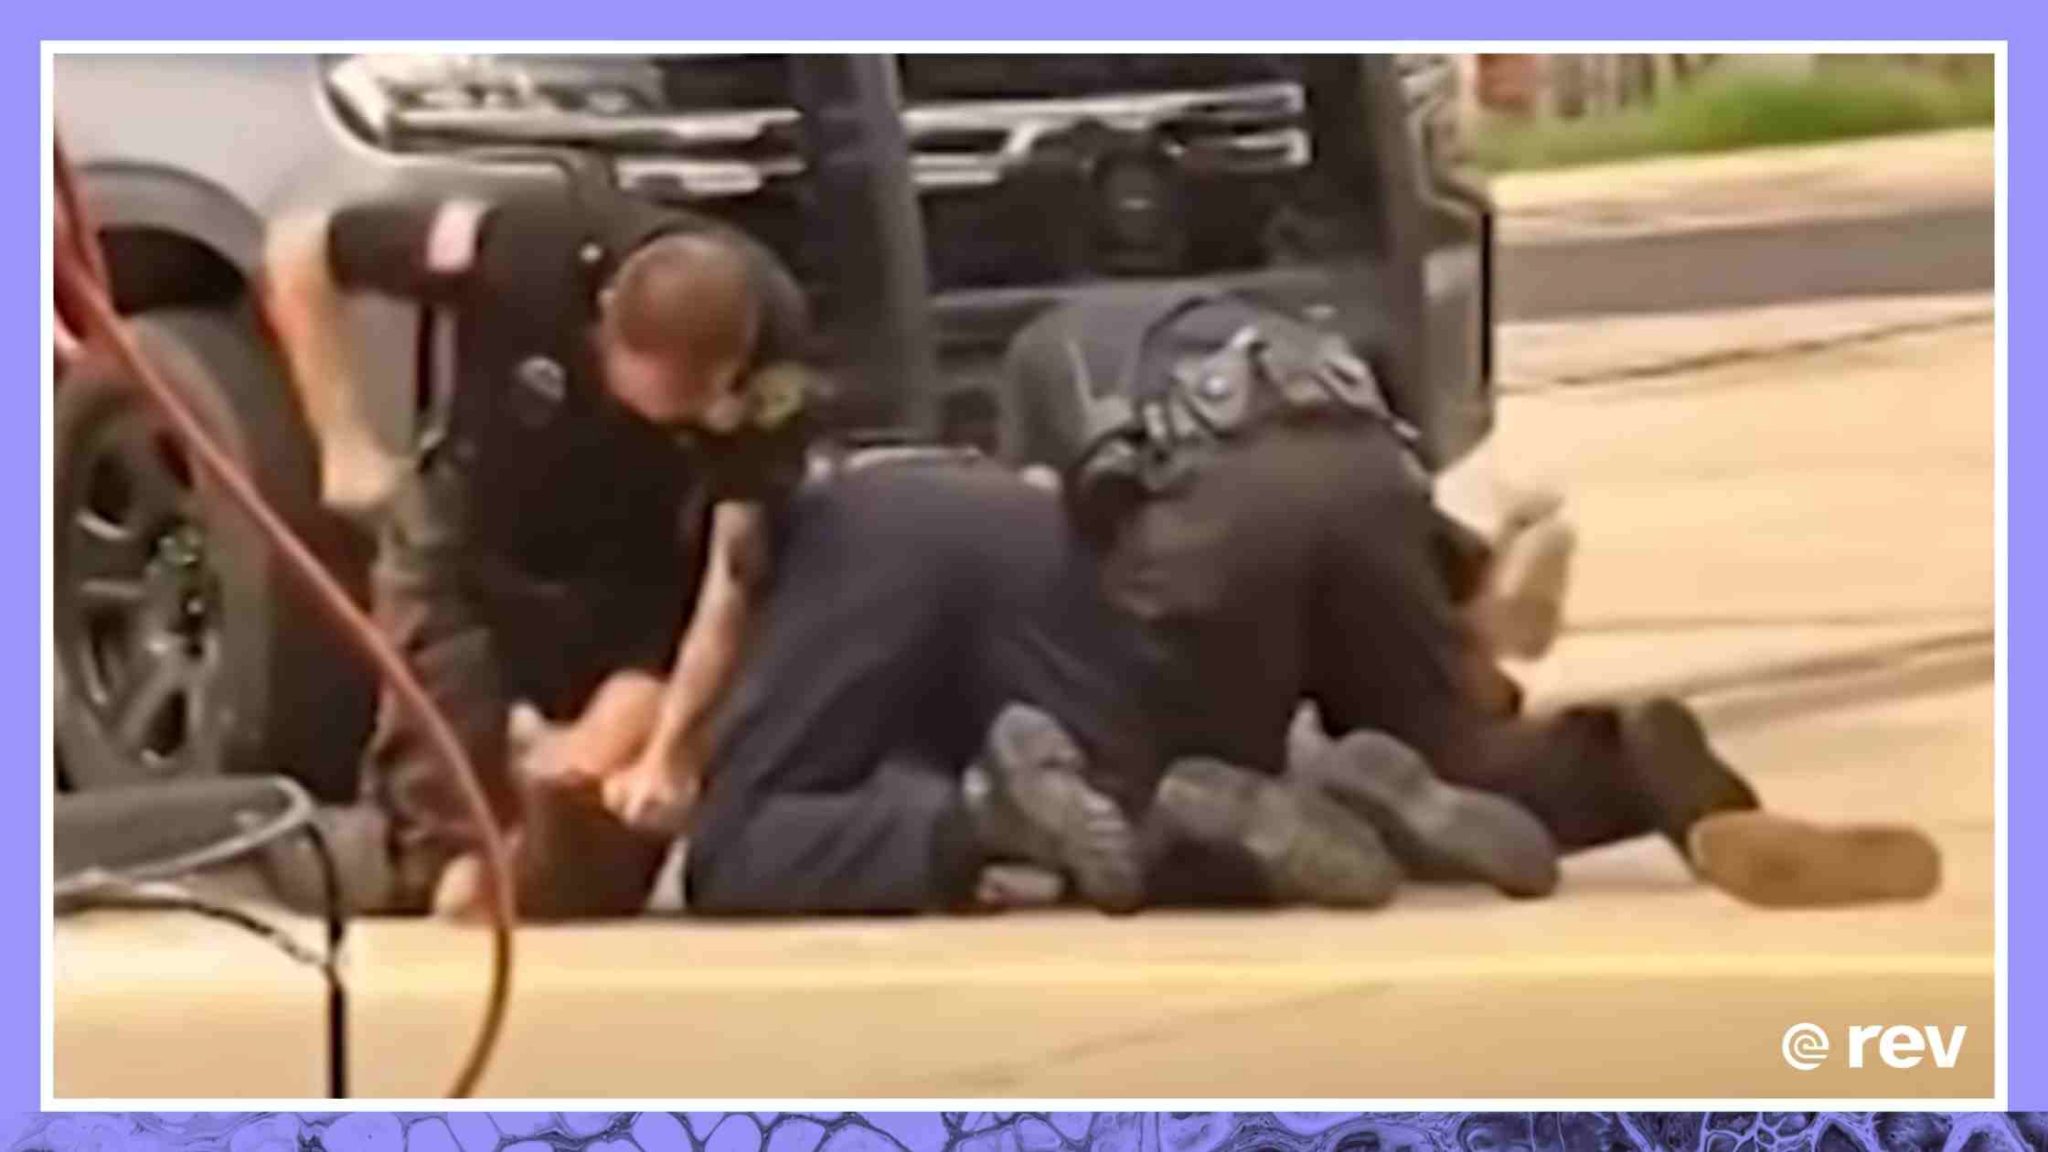 Video shows violent arrest by law enforcement in Arkansas Transcript